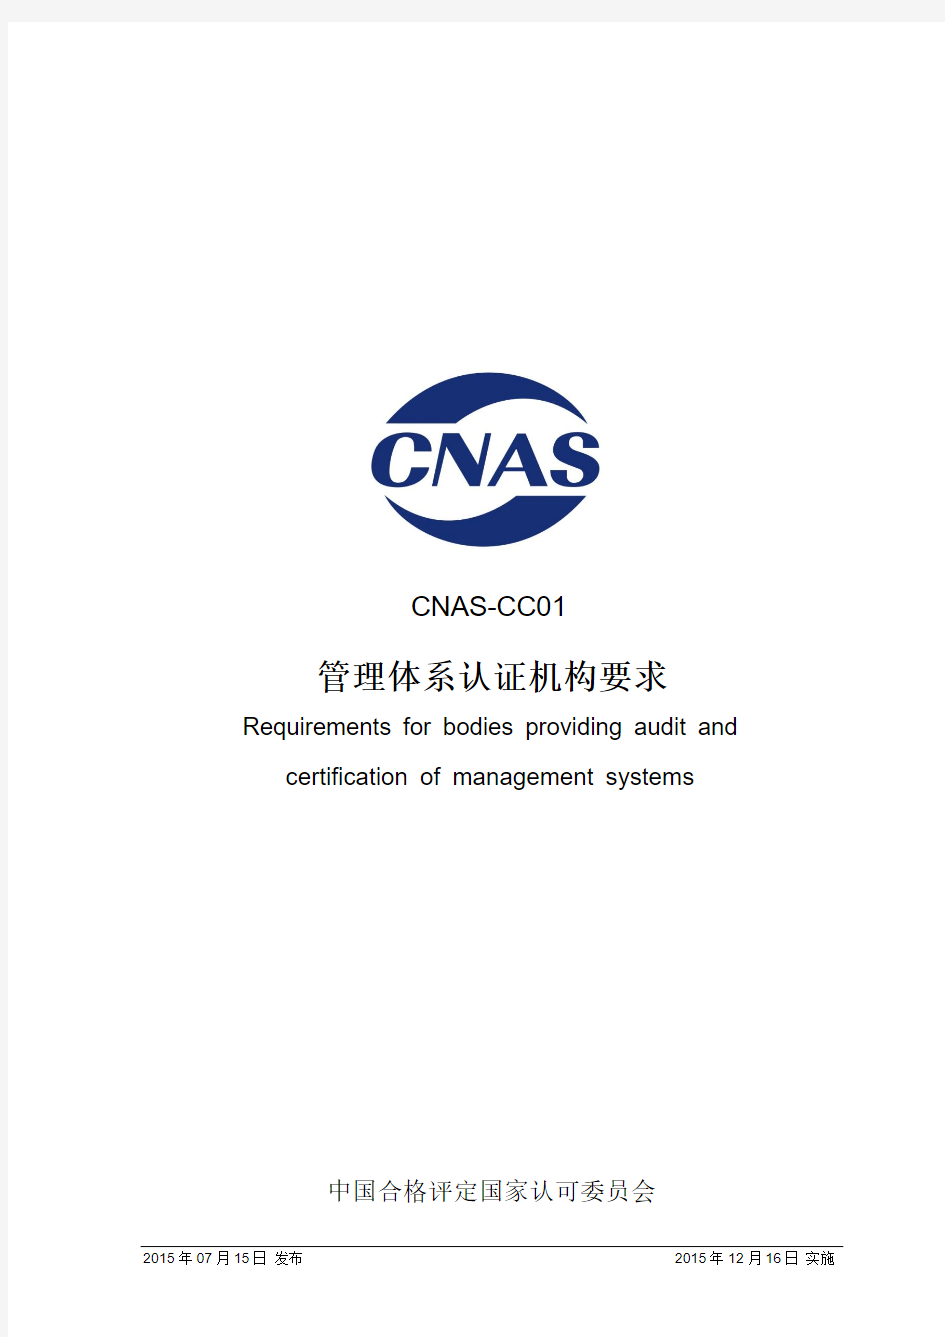 CNAS CC 管理体系认证机构要求